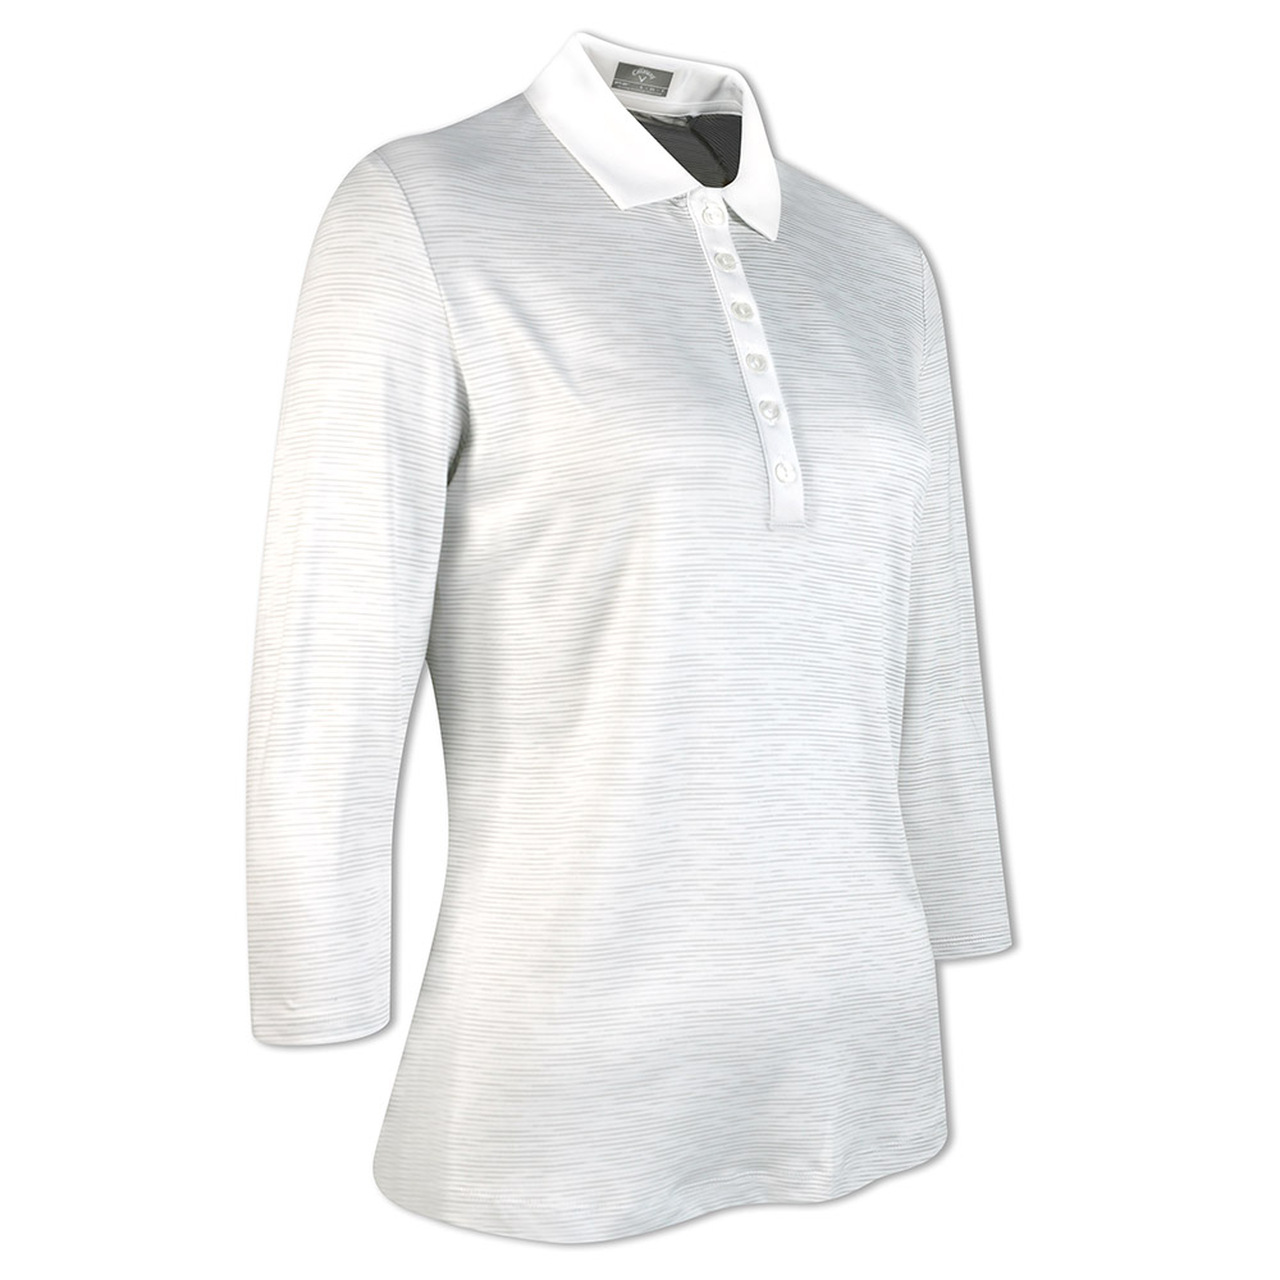 Callaway Space Dye Jersey dámské triko s 3/4 rukávem, bílé, vel. XS